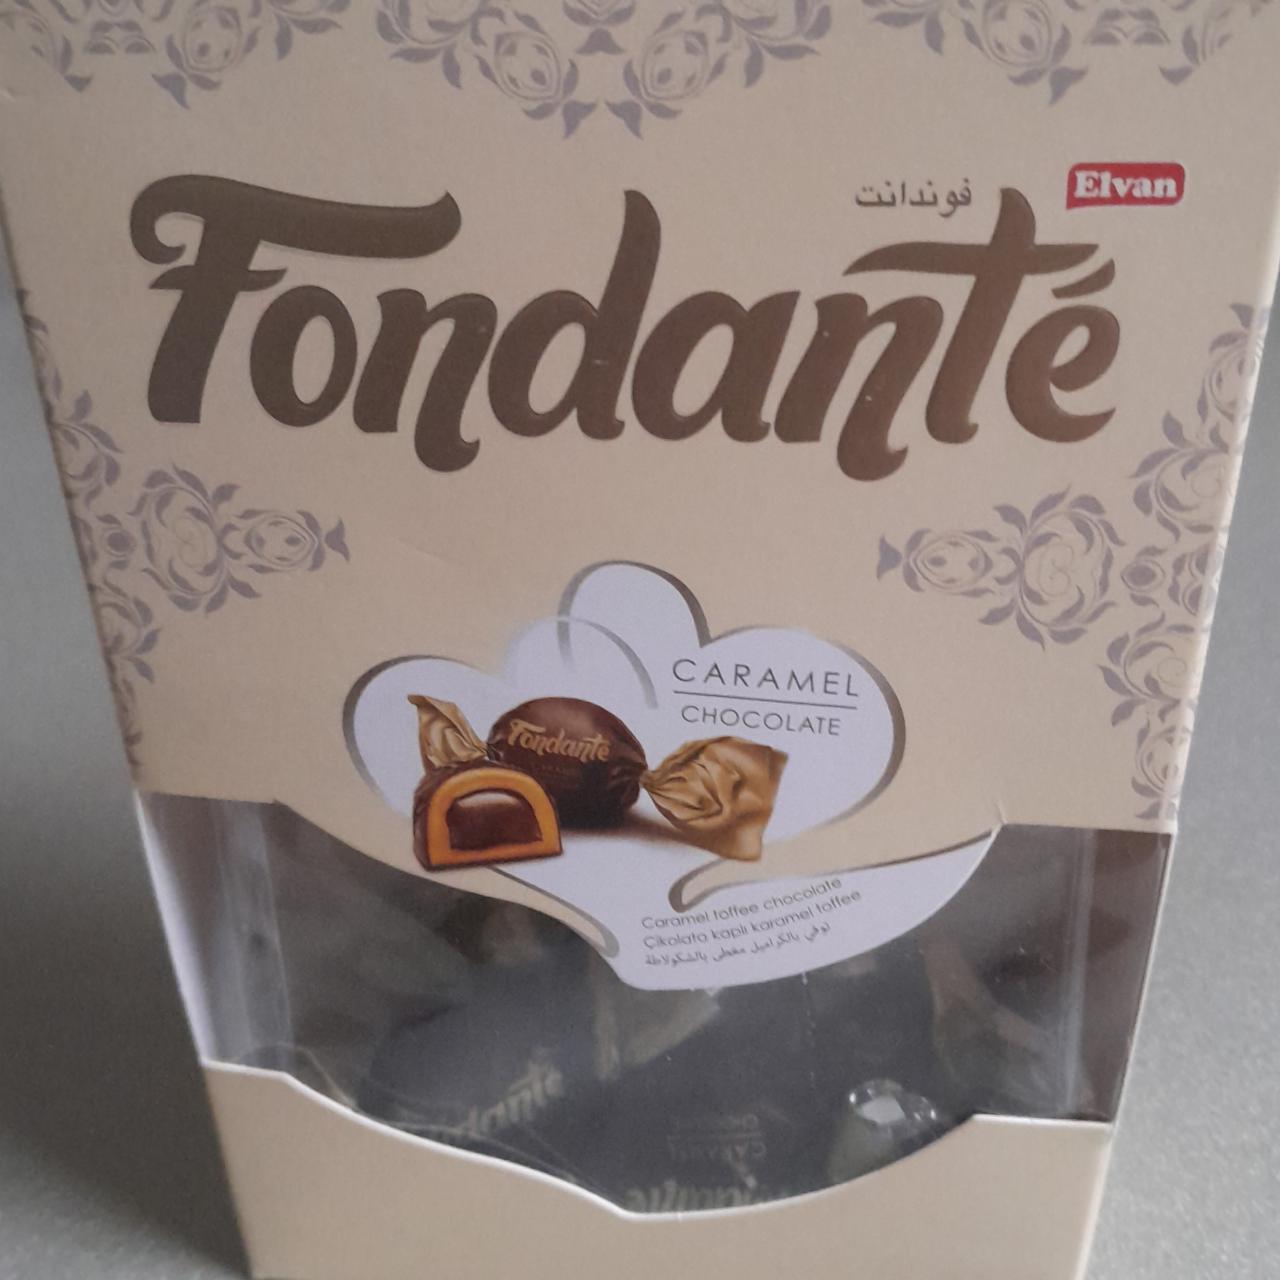 Фото - конфеты Fondante Caramel Chocolate Elvan